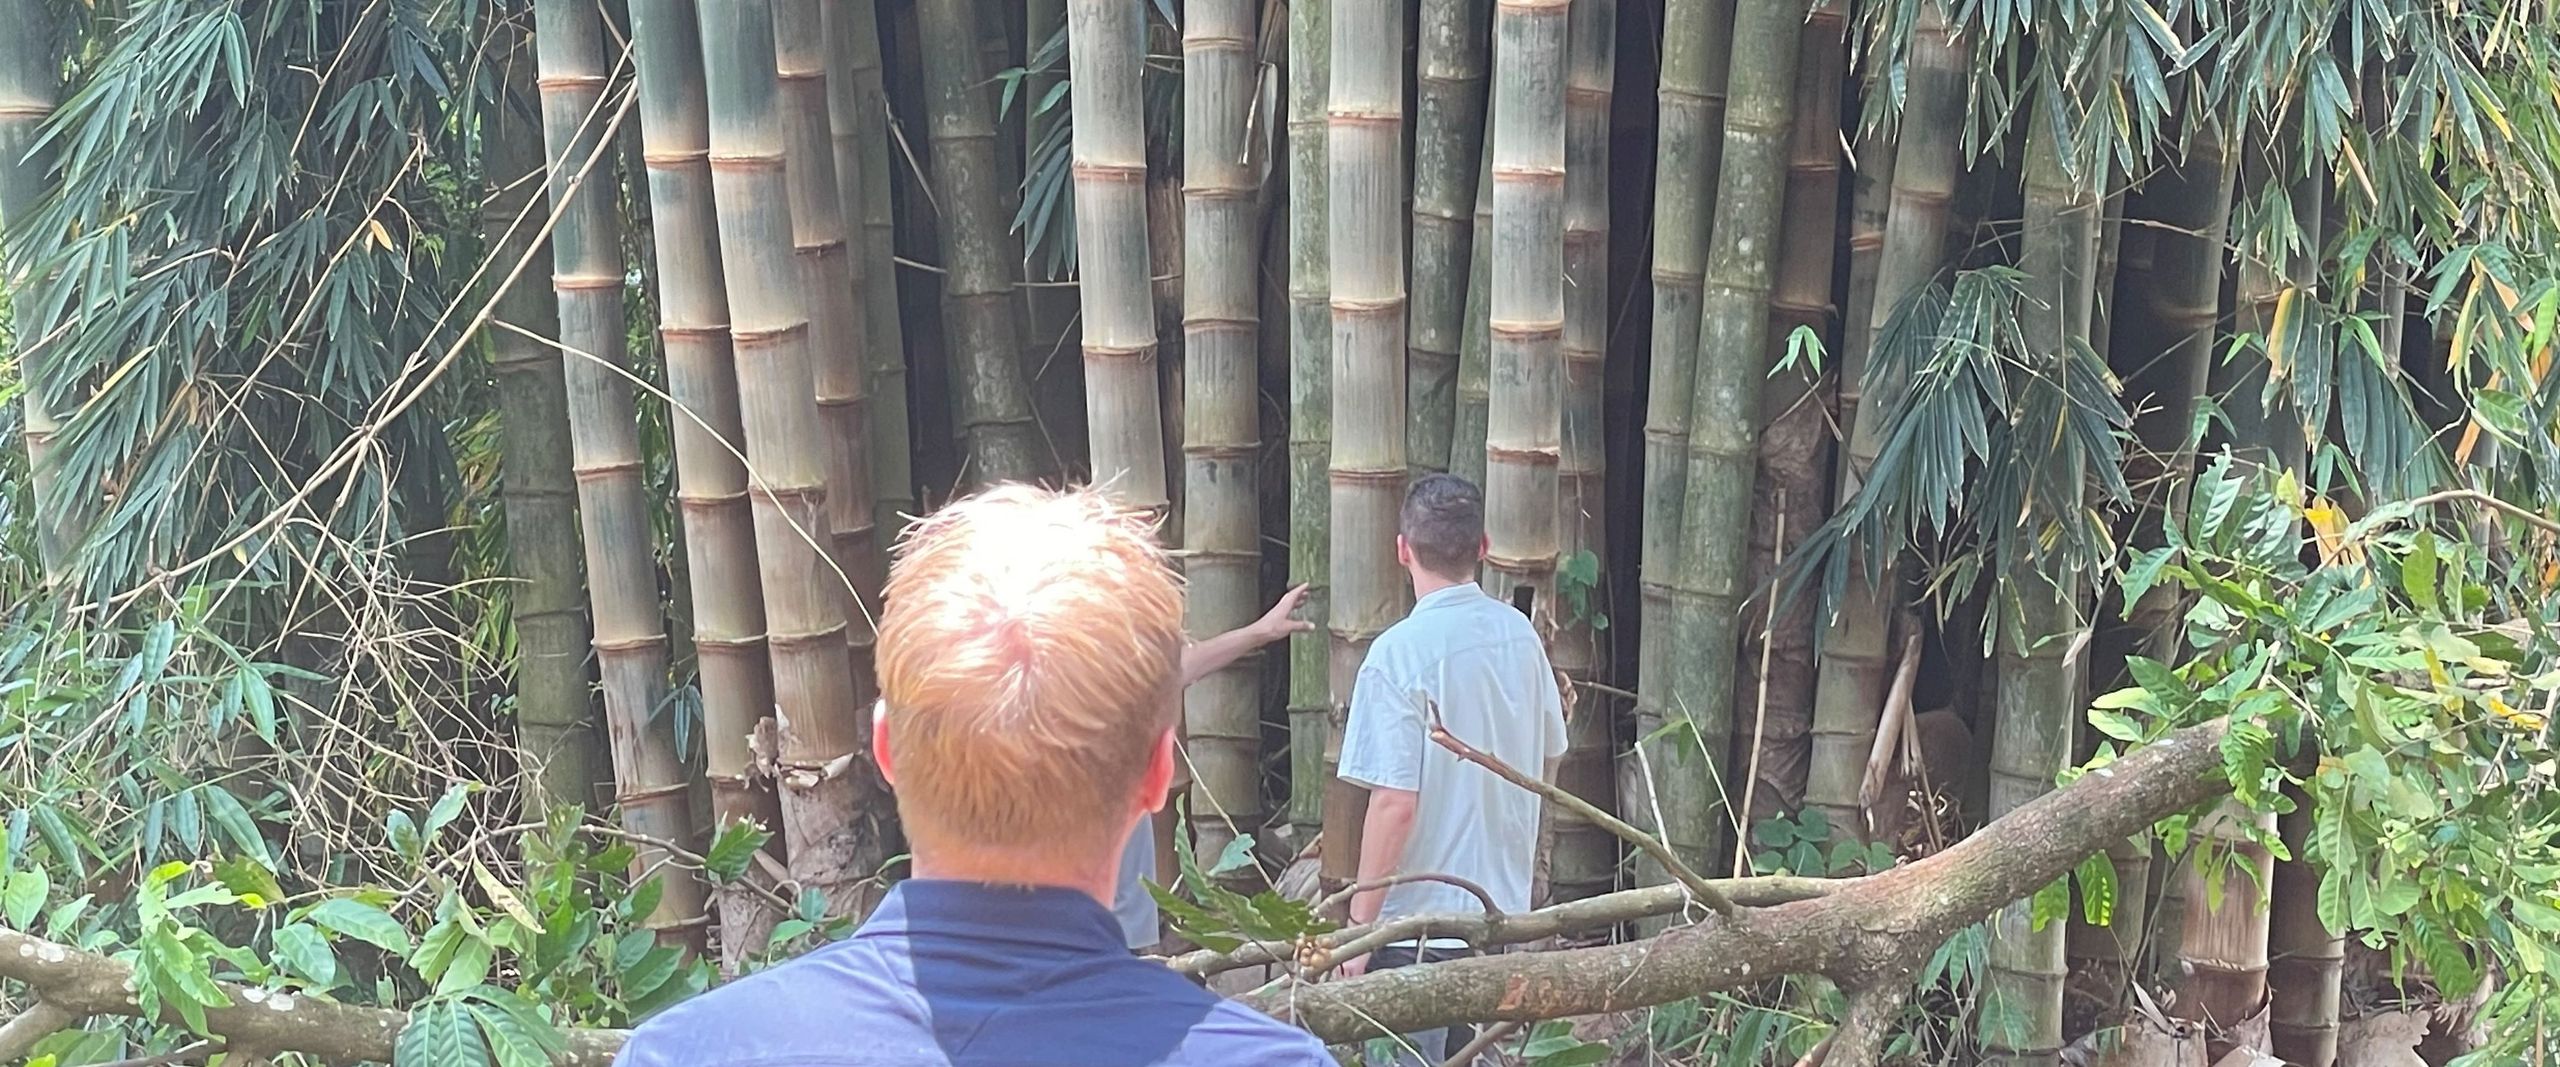 Zwei Männer stehen vor Bambuspflanzen